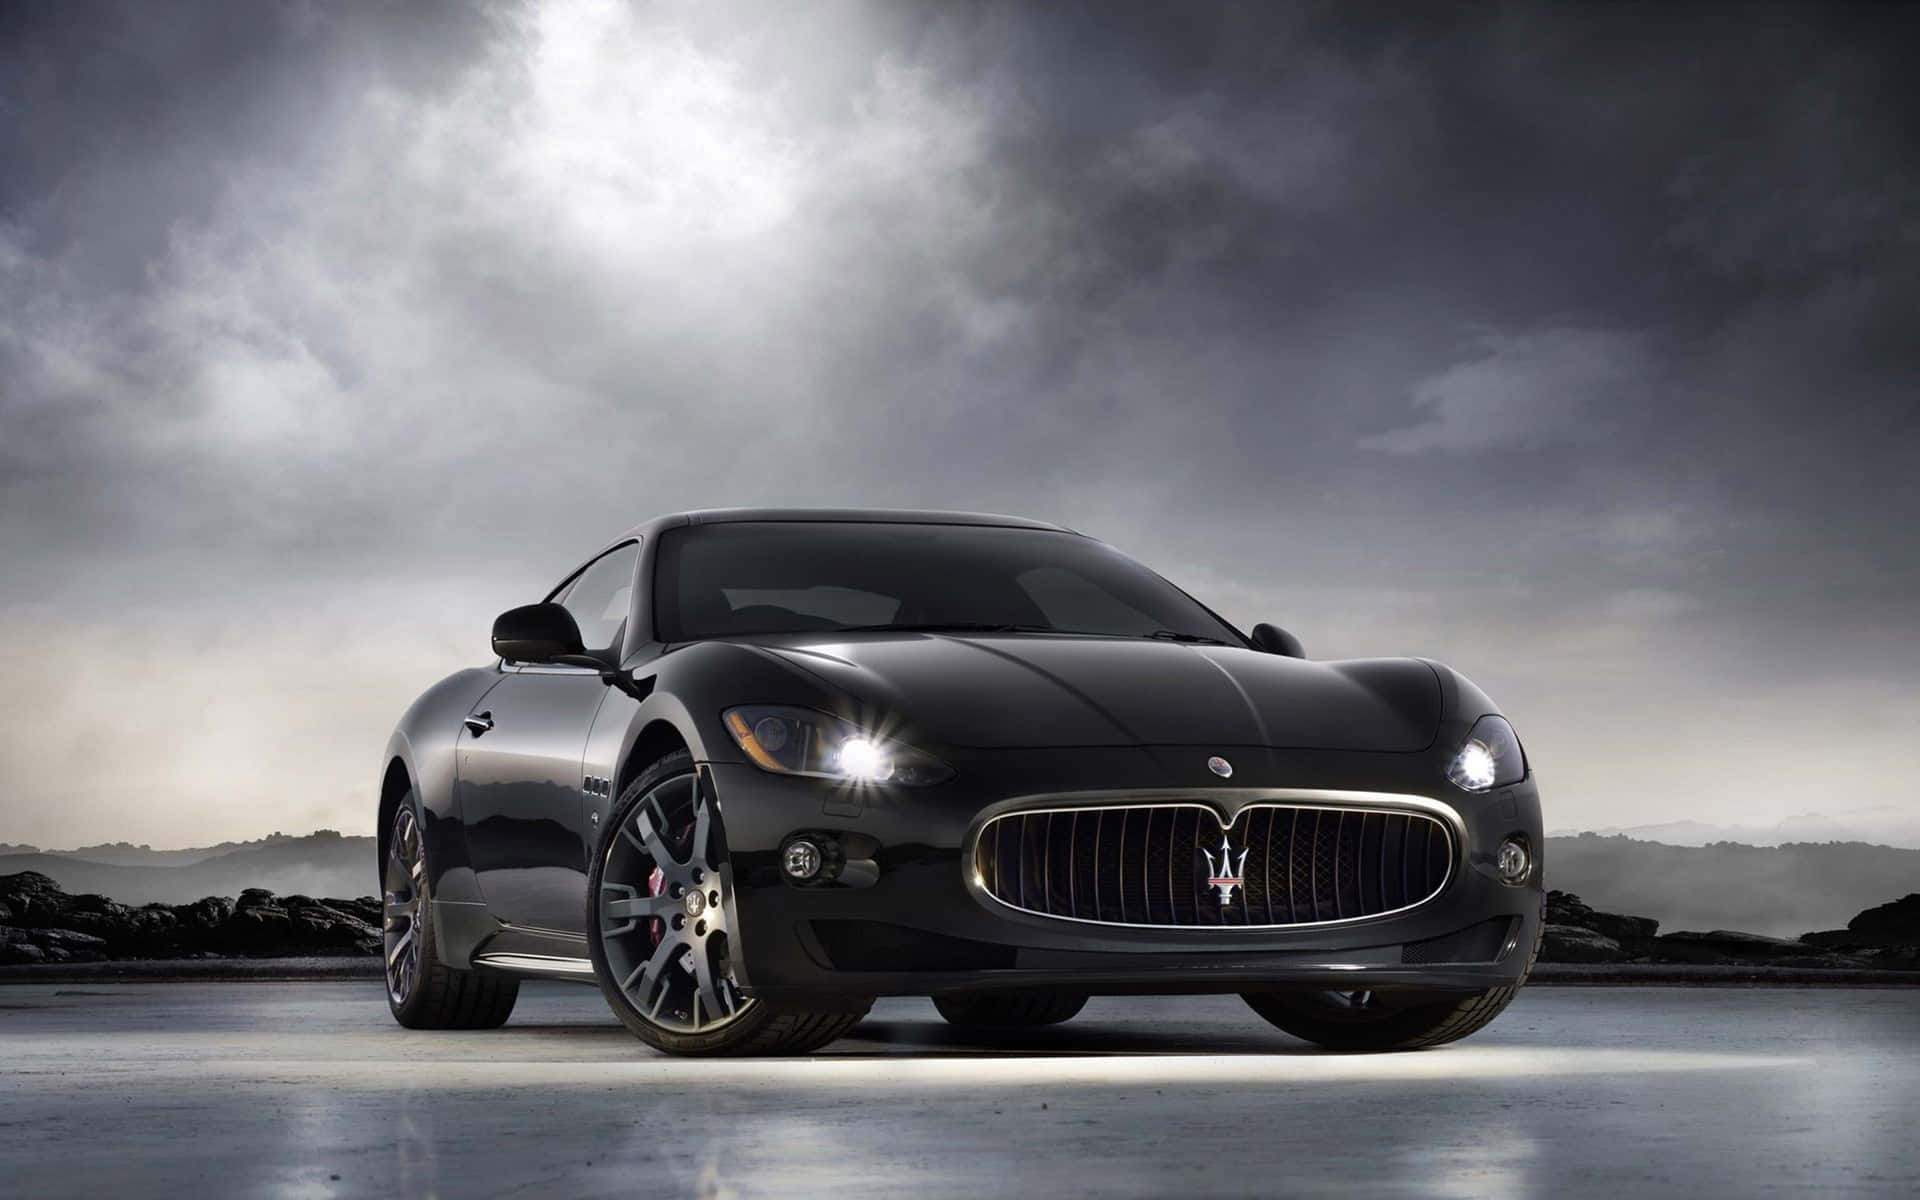 Fremtiden for luksuriøs kørsel - 4K Maserati Wallpaper Wallpaper